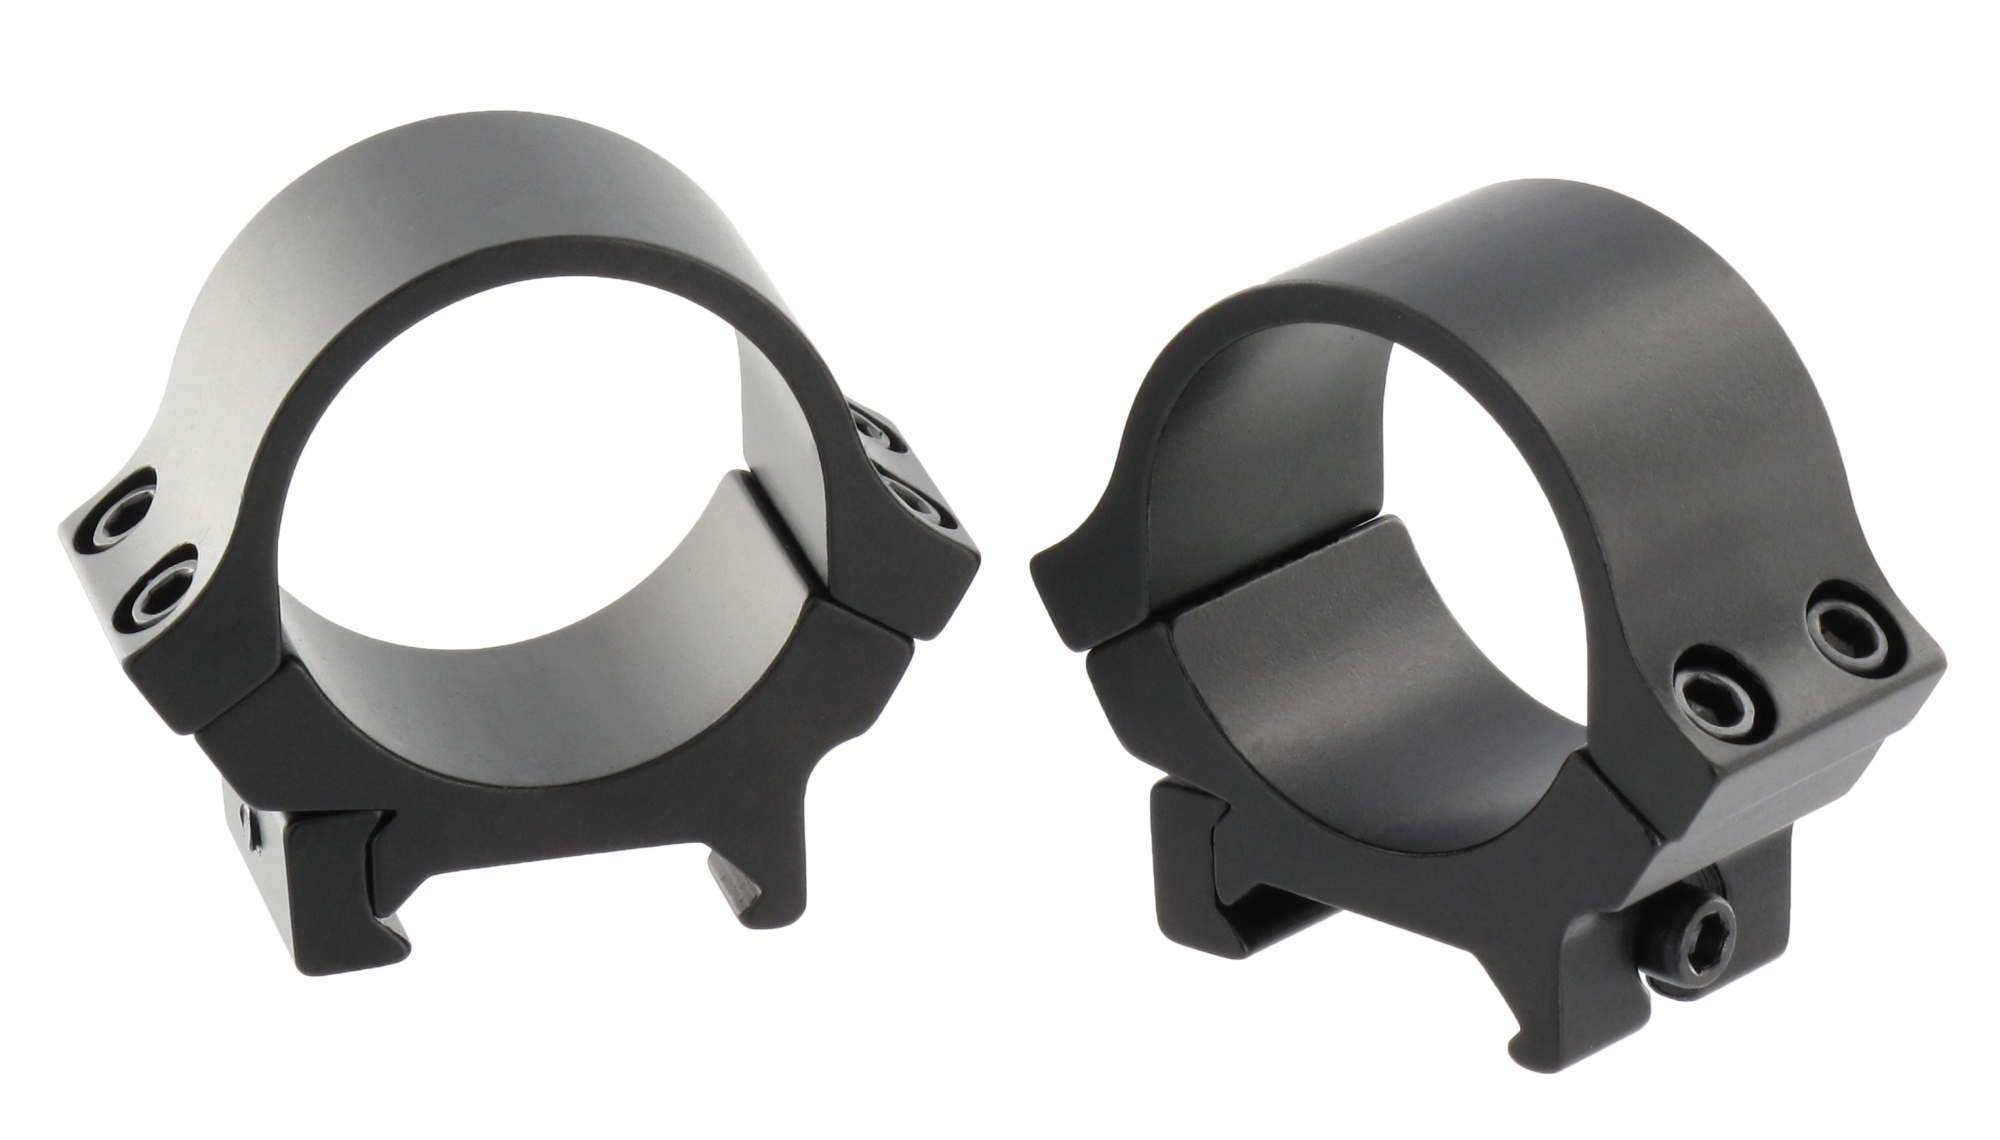 Кольца низкие чёрные Aimpoint комплект 30mm (12229) купить по оптимальной цене,  доставка по России, гарантия качества